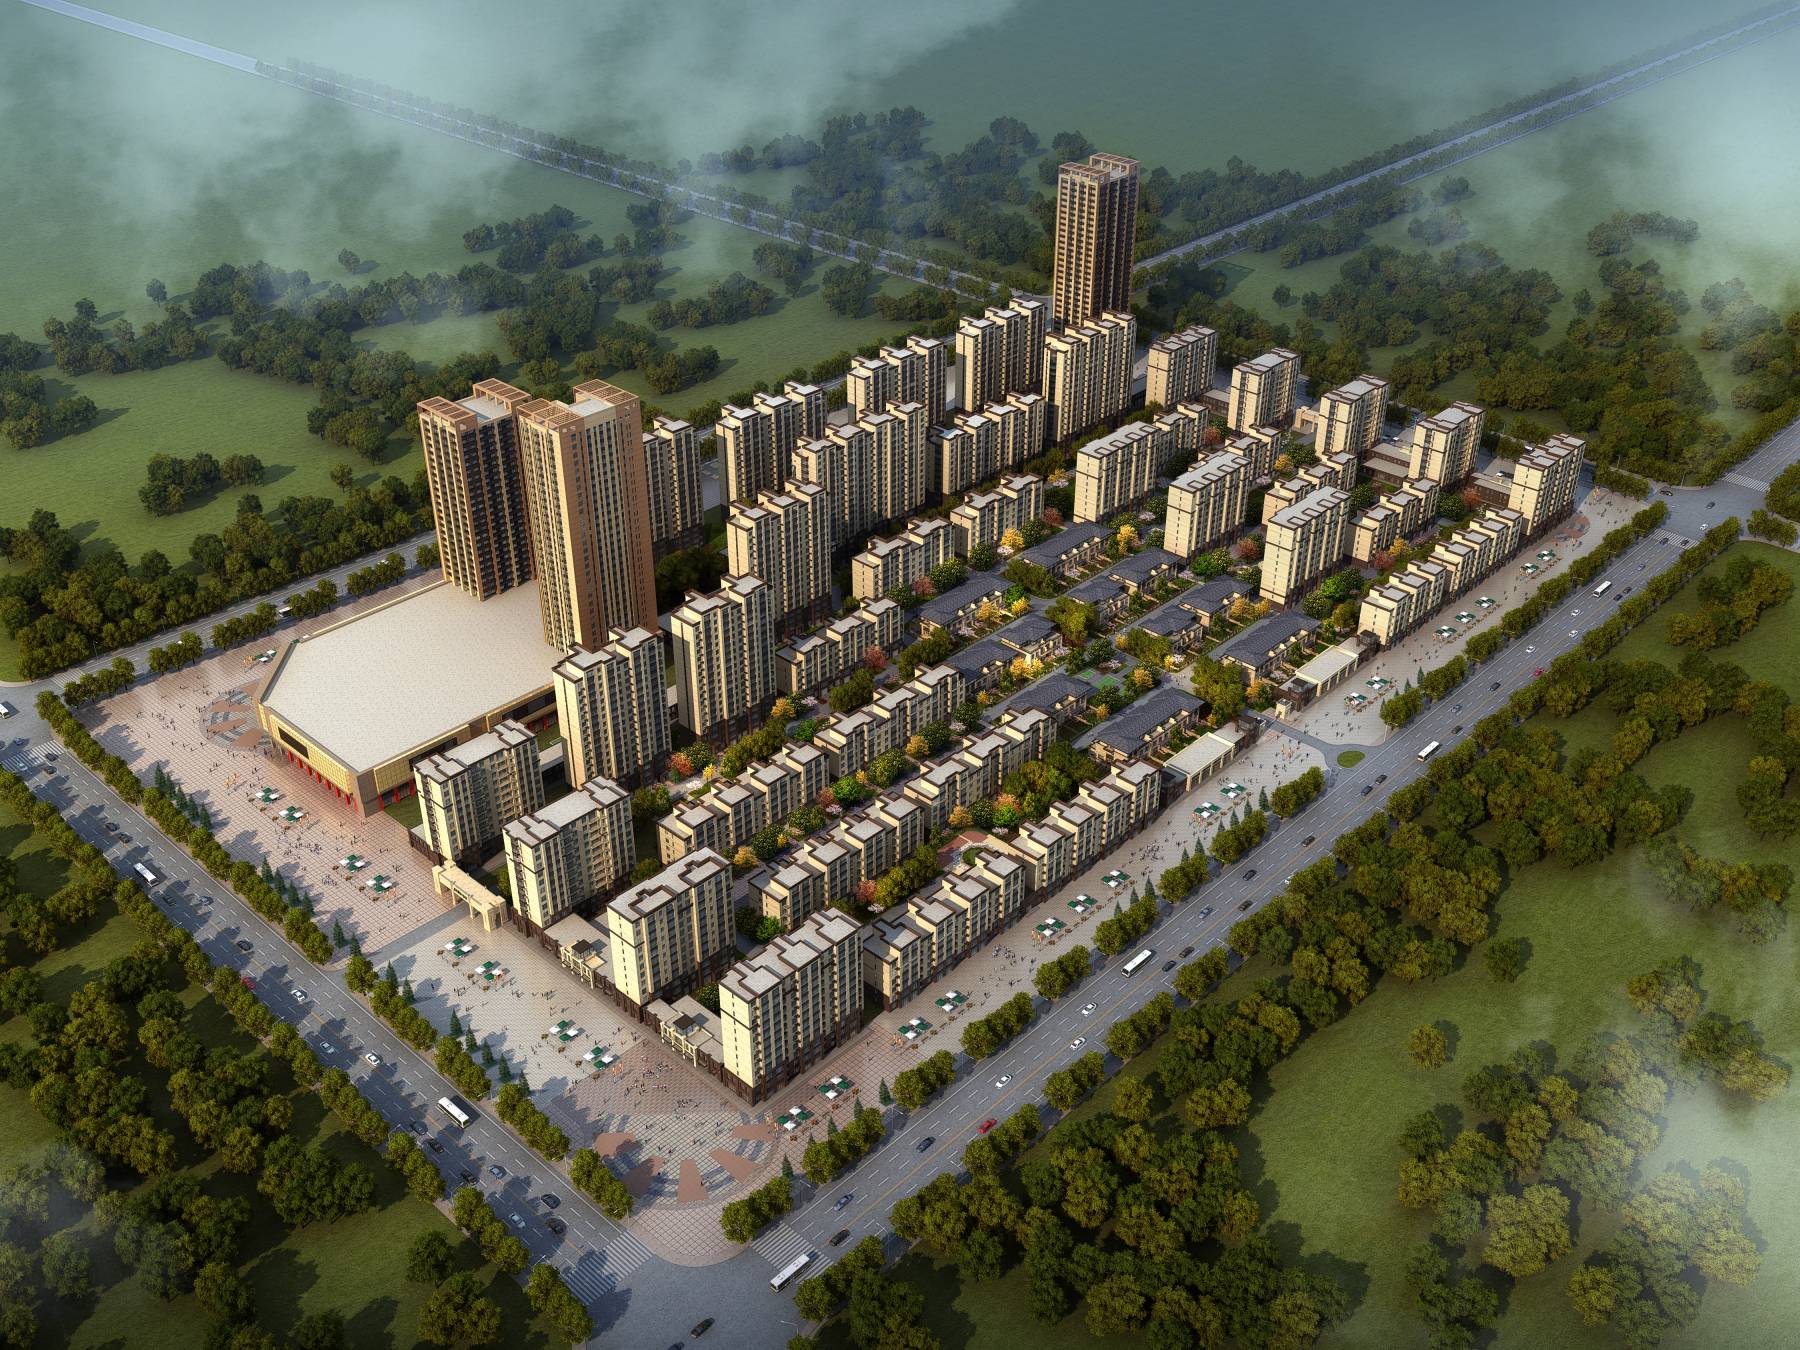 盘锦小区模型景观-地产模型-北京远山顺德模型设计有限公司